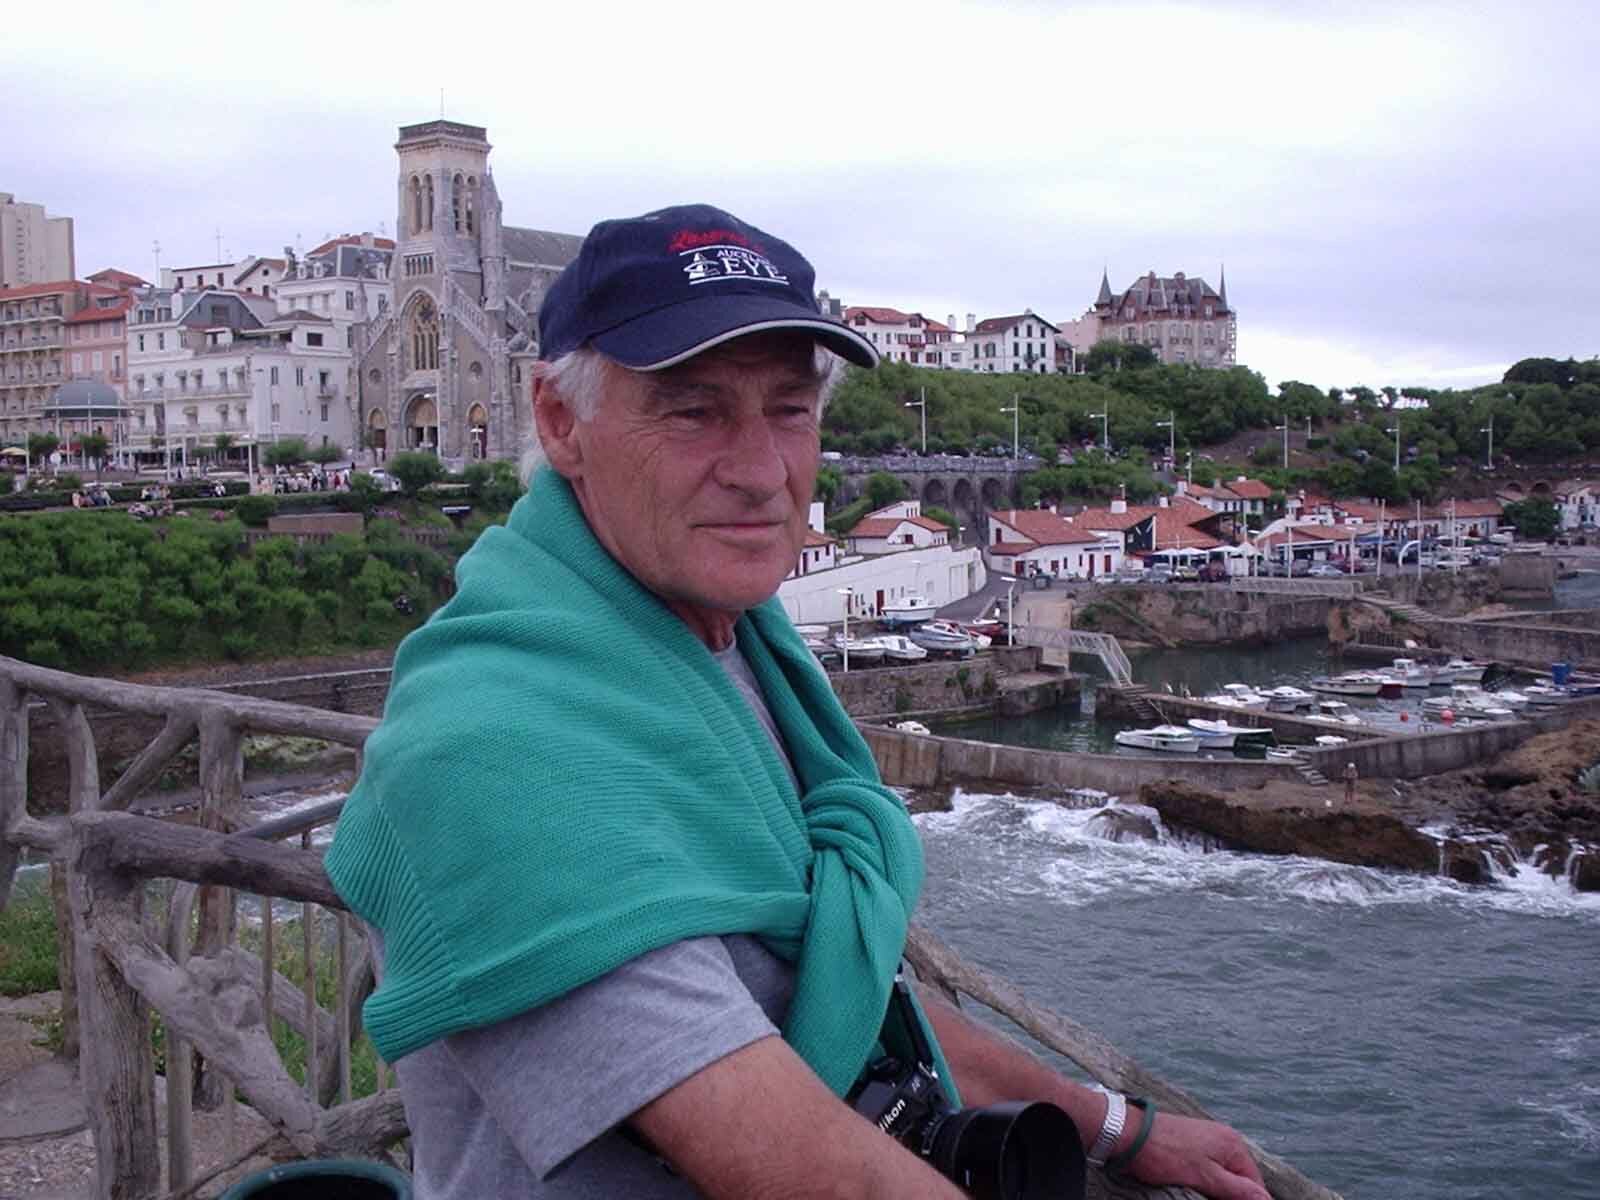 Roger Morton in Biarritz, France